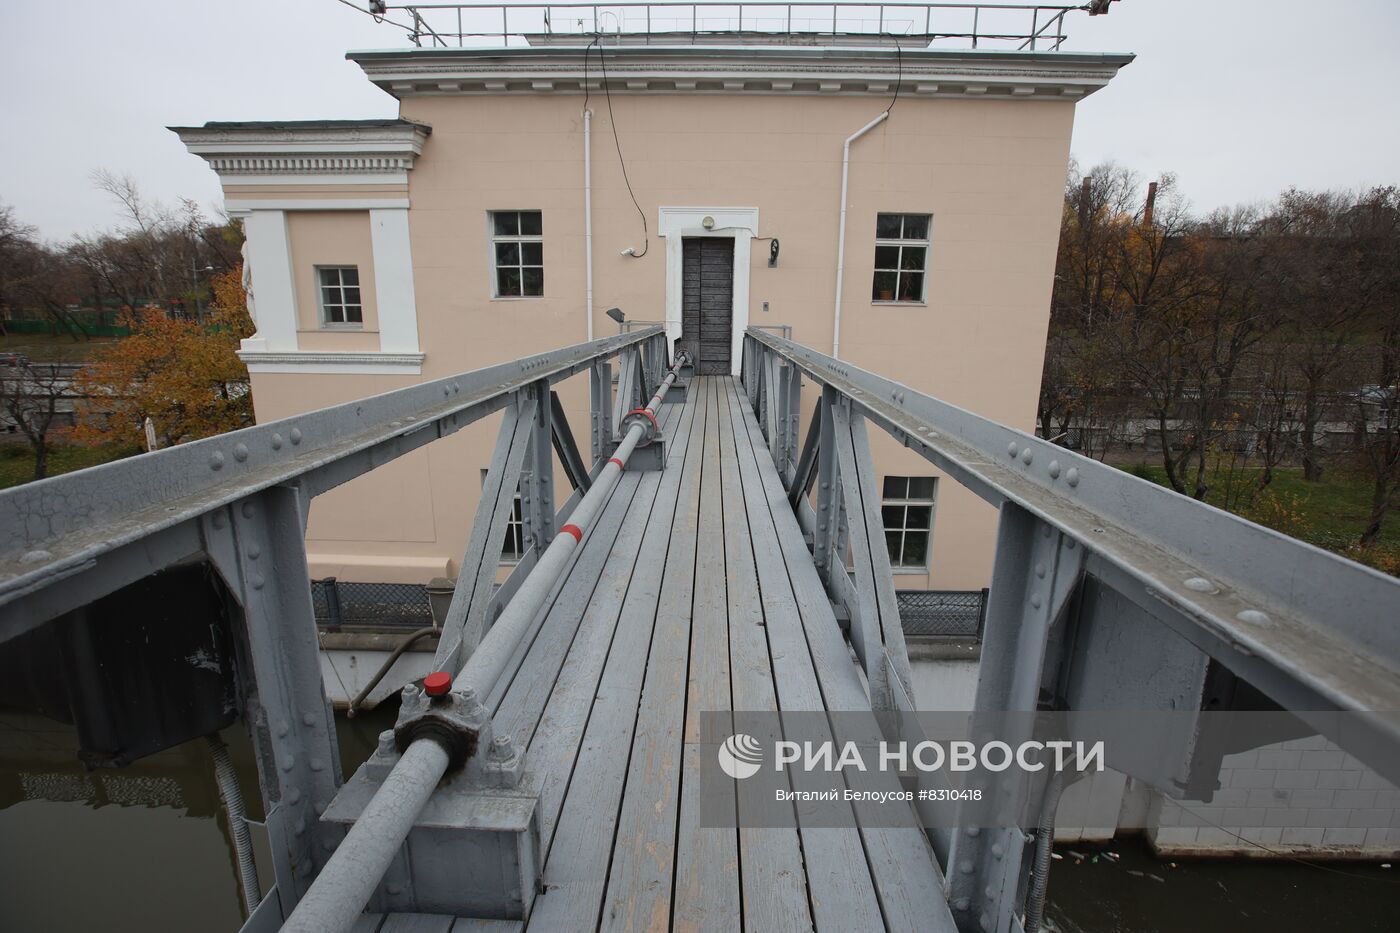 Работа Сыромятнического гидроузла в Москве